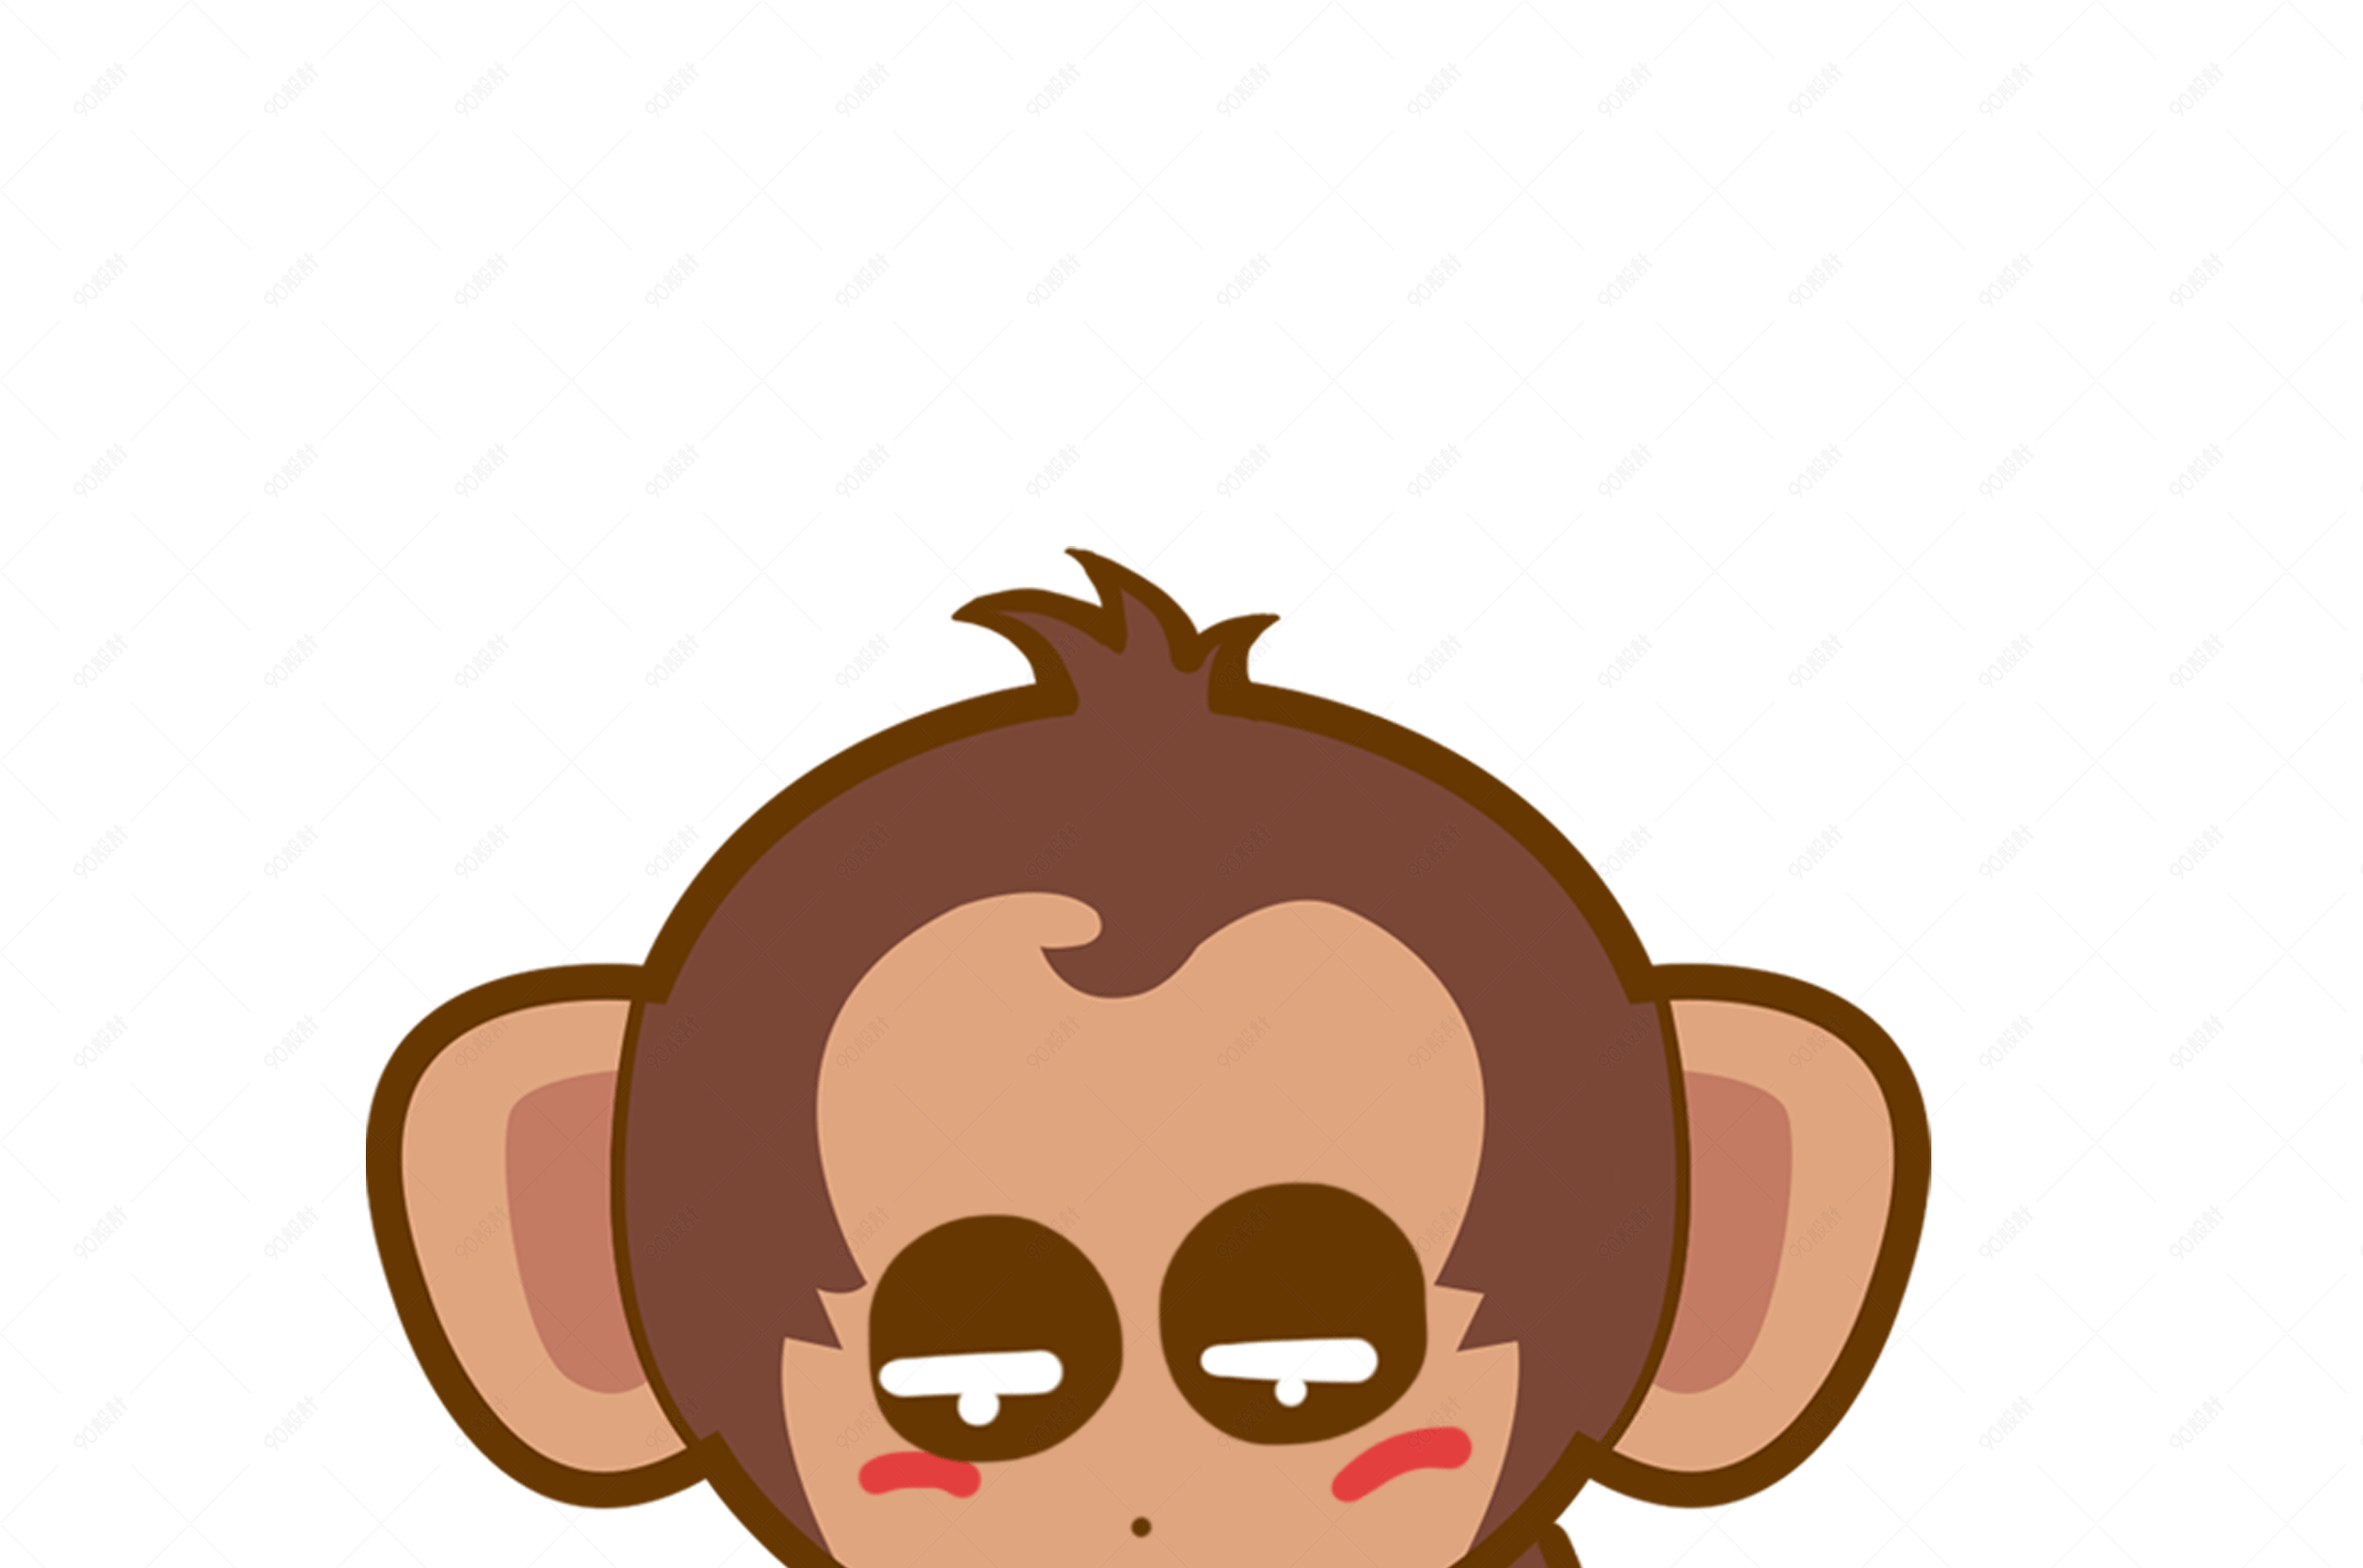 卡通可愛矢量搞笑小猴子素材 Monkey Clipart, 剪貼畫, 卡通猴子, 小猴子向量圖案素材免費下載，PNG，EPS和AI素材下載 ...